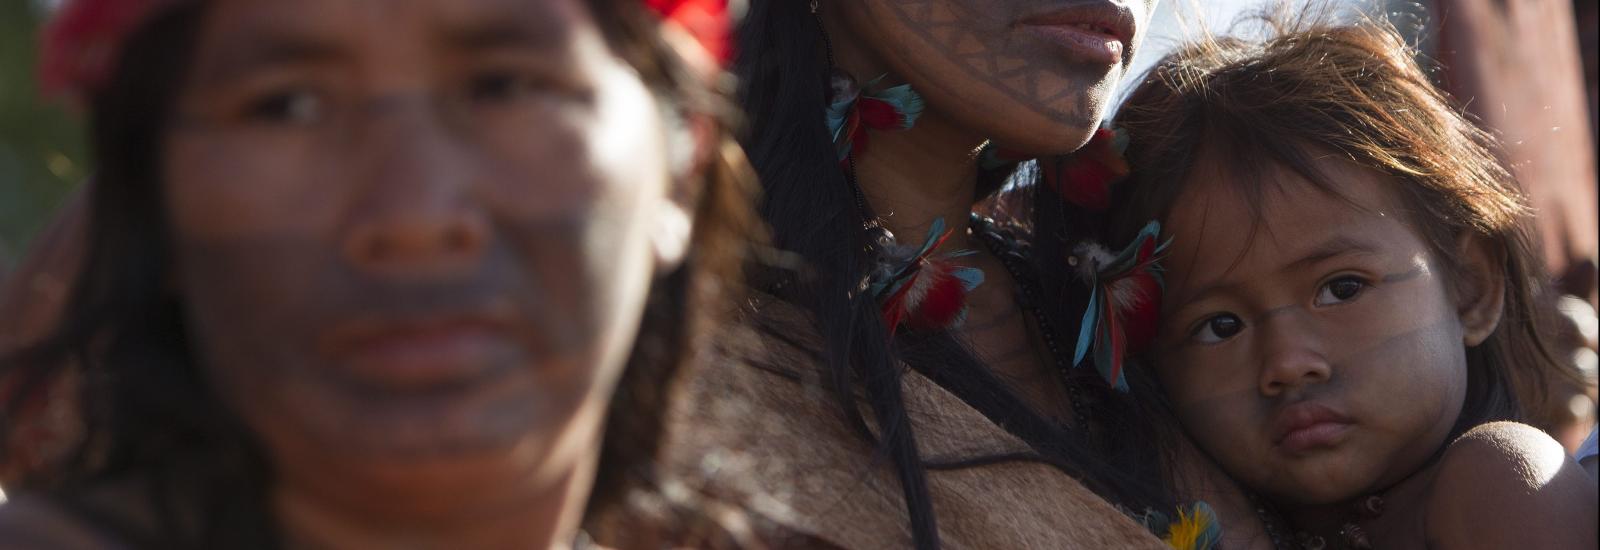 Povo indígena Amazónia